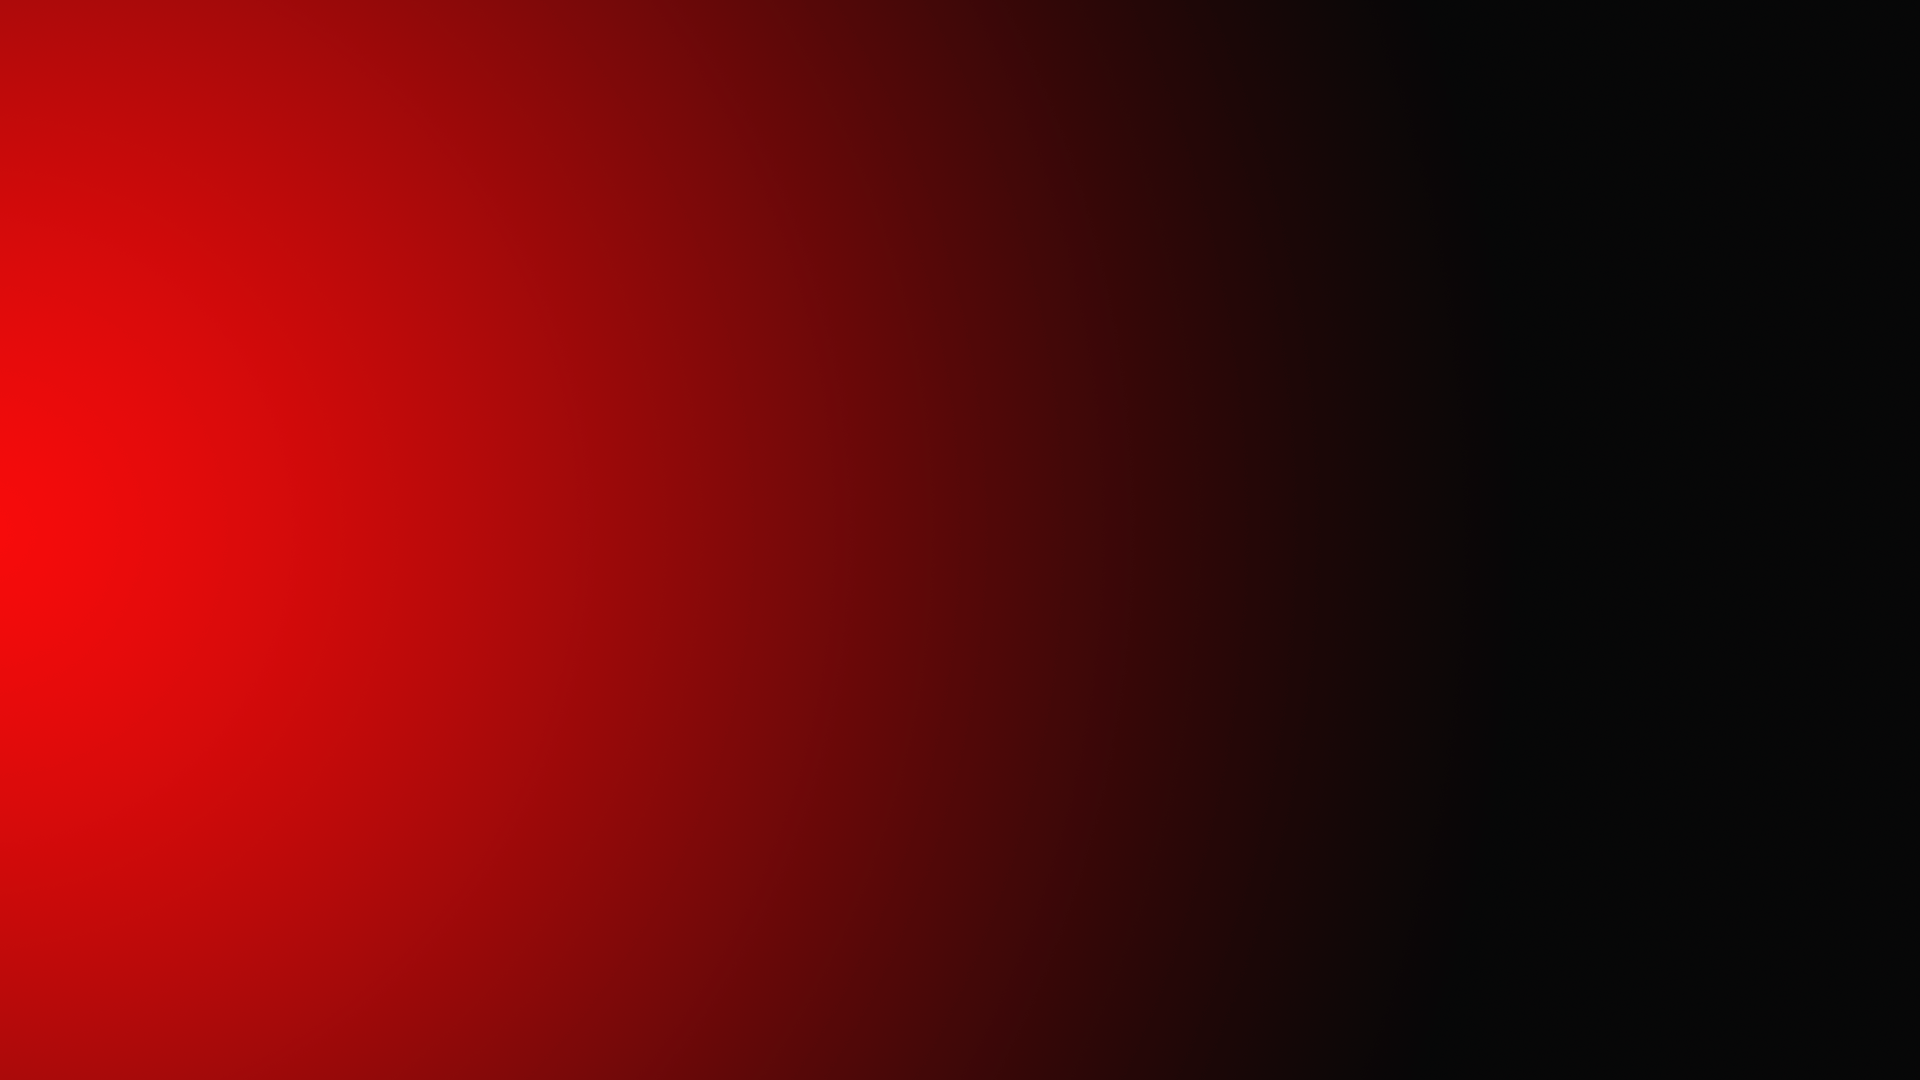 Hình nền Ombre đỏ đen: Kết hợp giữa màu sắc đỏ nồng nàn và sự quyến rũ của màu đen, hình nền Ombre đỏ đen chắc chắn sẽ khiến bạn phải say đắm. Hãy cùng nhấn play để khám phá một thế giới Ombre đỏ đen đầy bất ngờ!